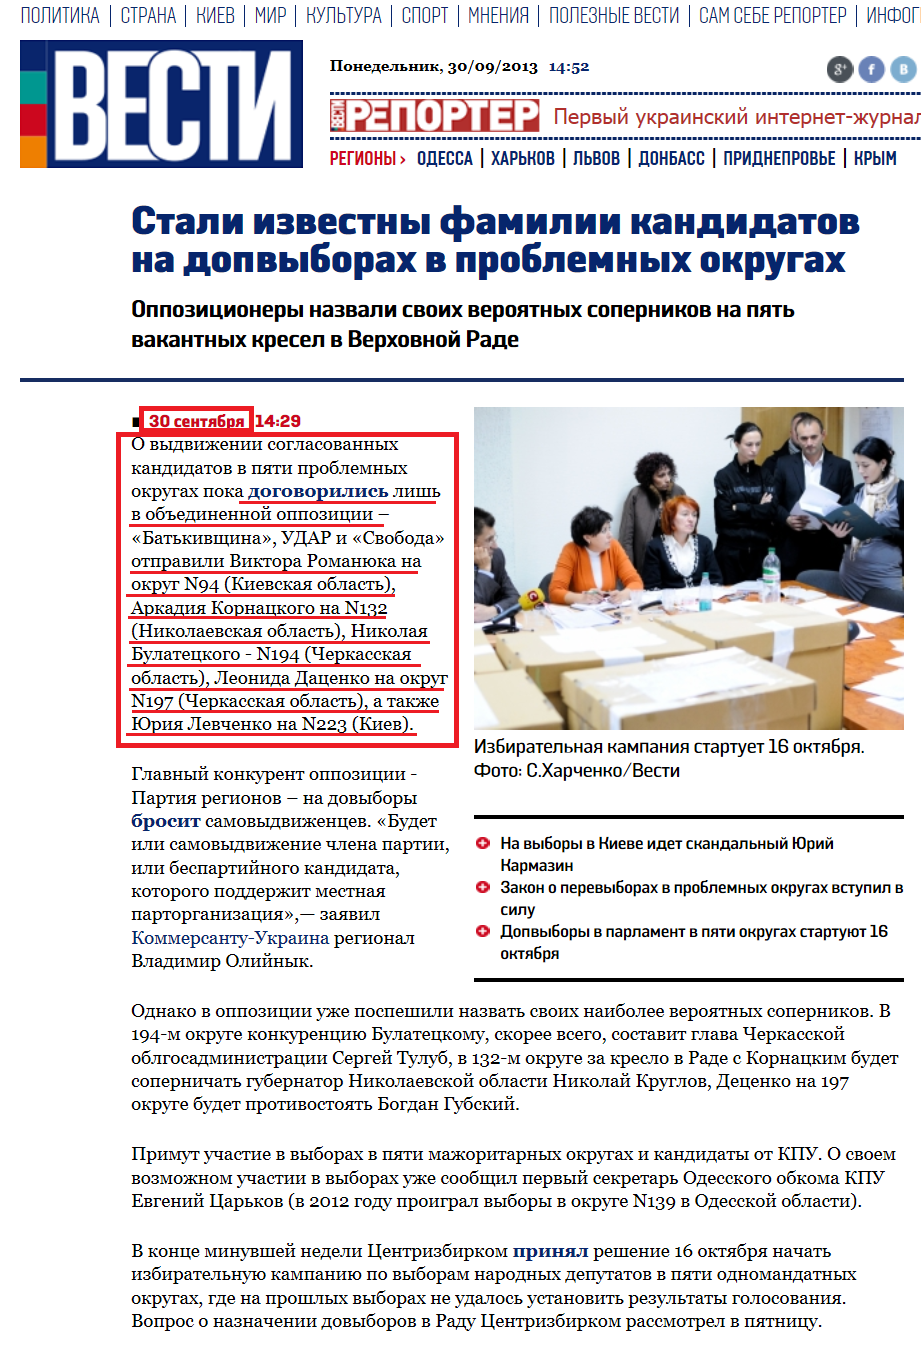 http://vesti.ua/politika/19036-stali-izvestny-familii-kandidatov-na-dopvyborah-v-problemnyh-okrugah